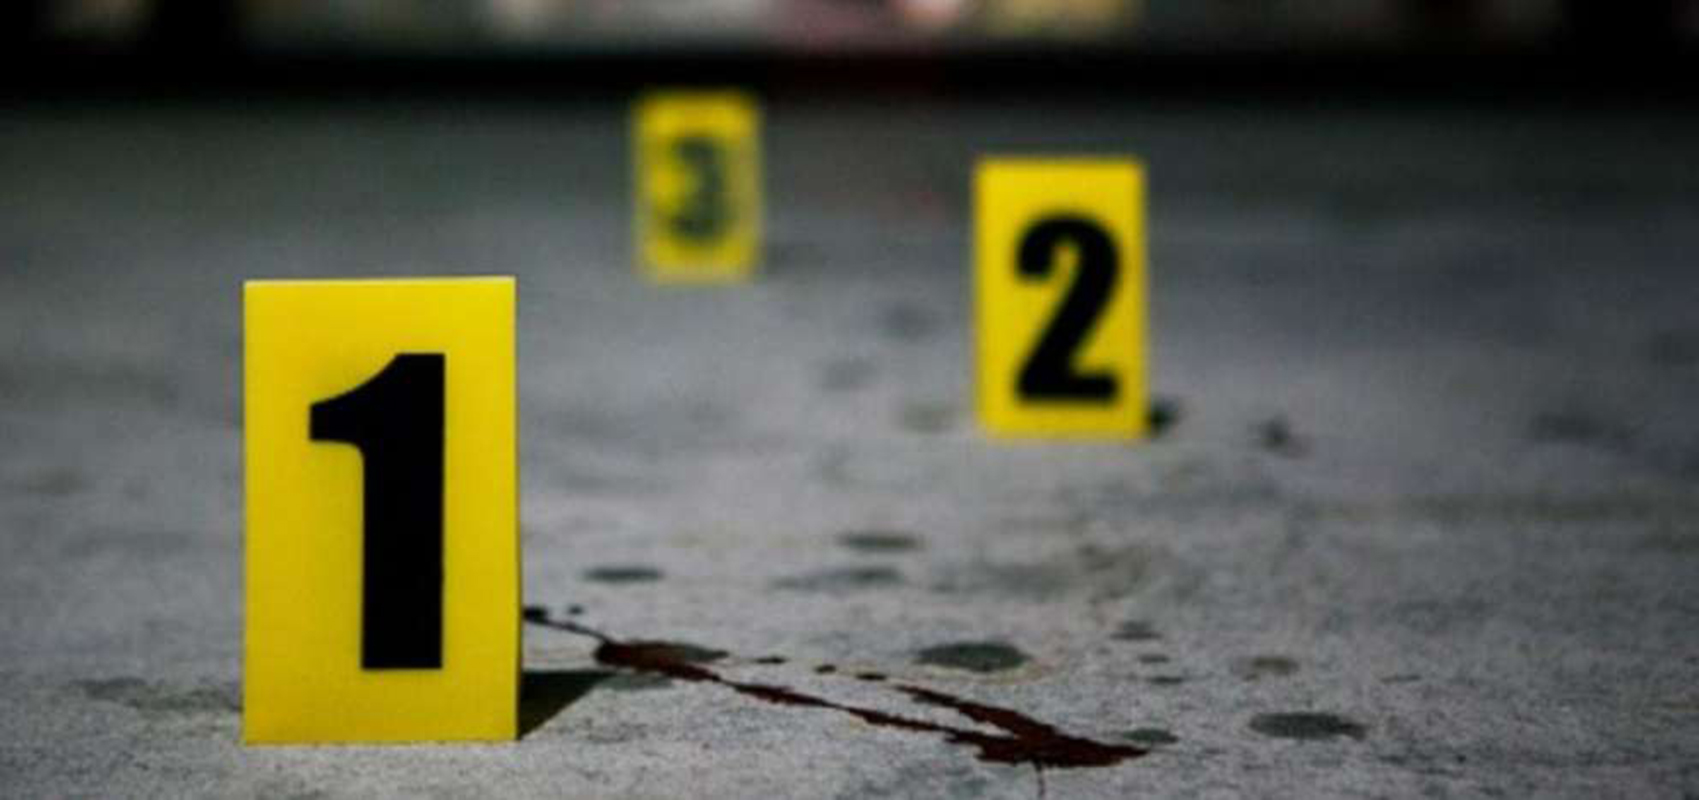 Tres personas mueren durante un asalto en Río de Janeiro